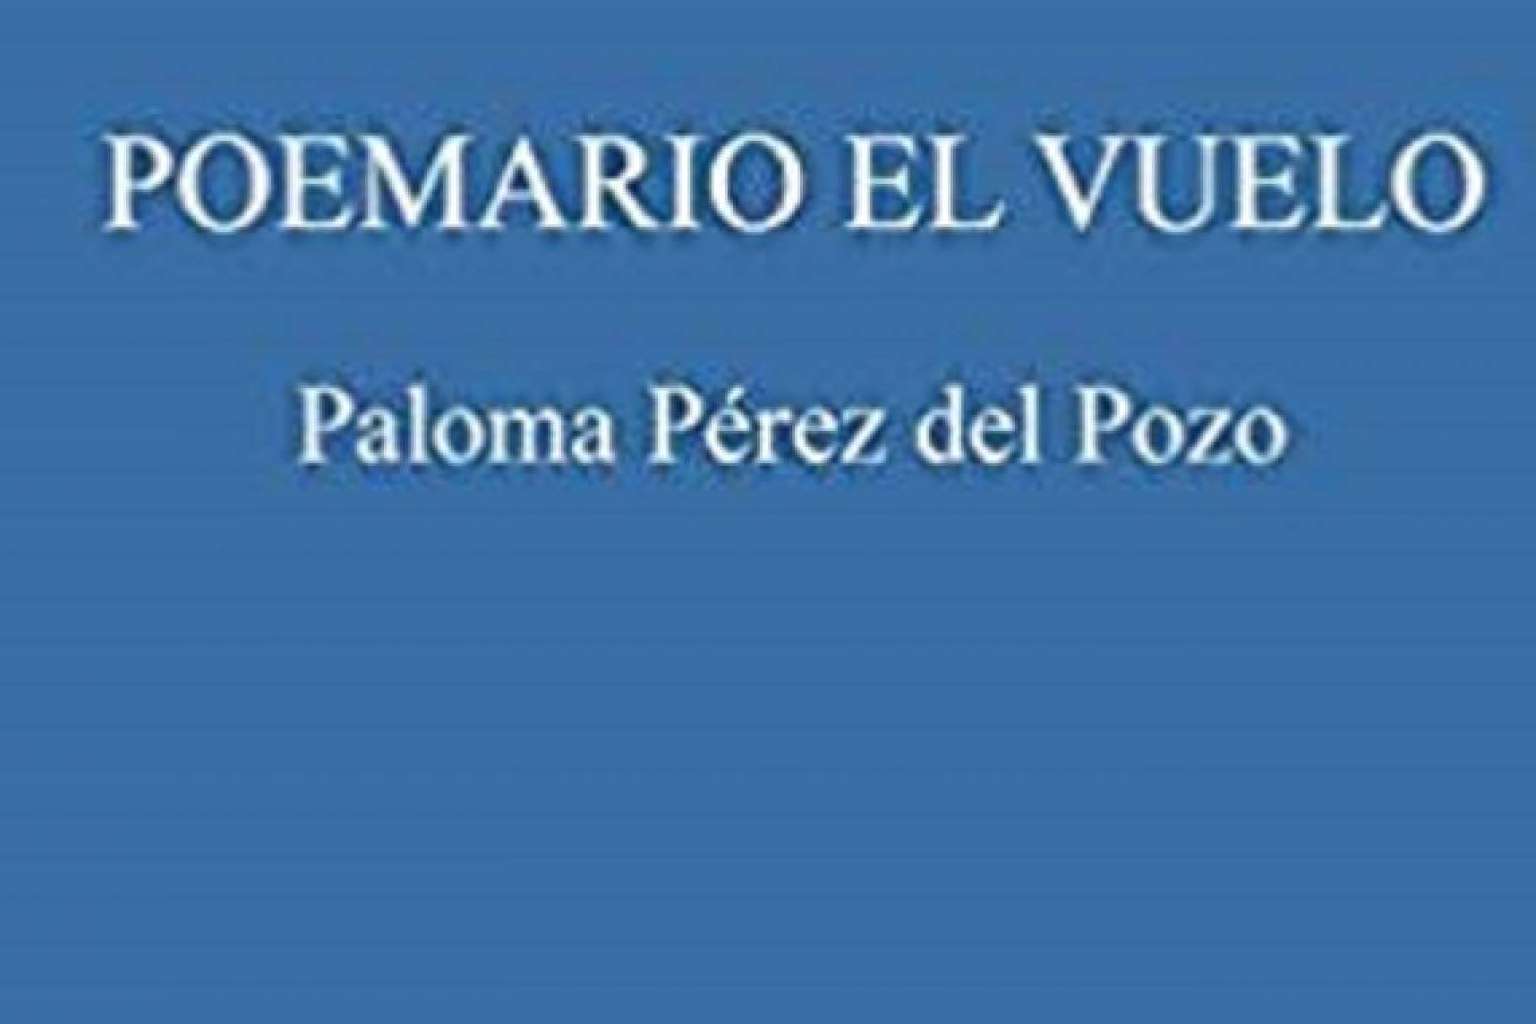 Poemario El Vuelo, una producción de poemas de la doctora Paloma Pérez